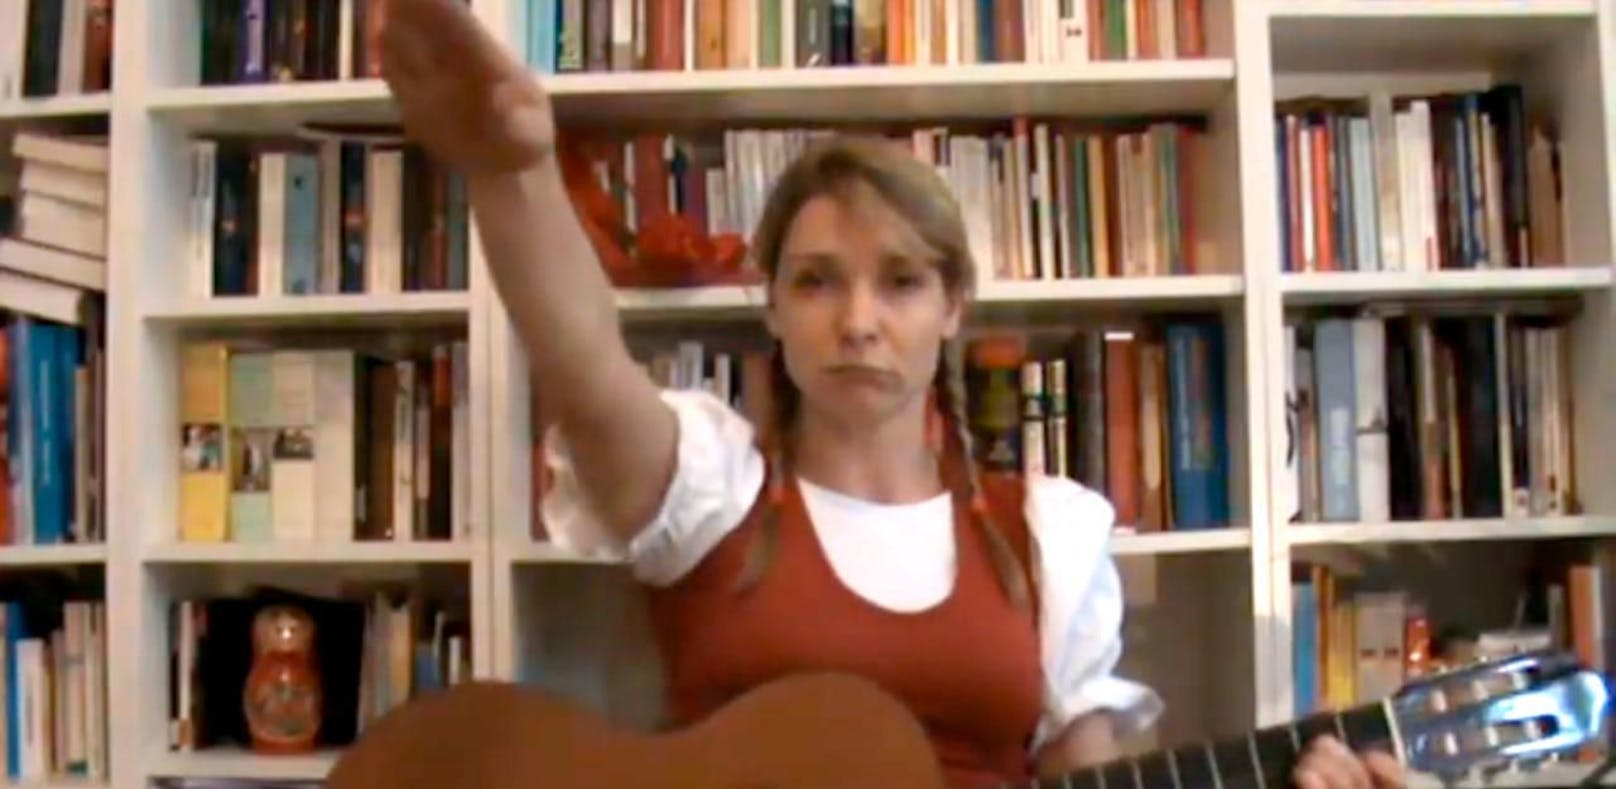 Anzeige für Maria Stern wegen 'Hitlergruß' in Video